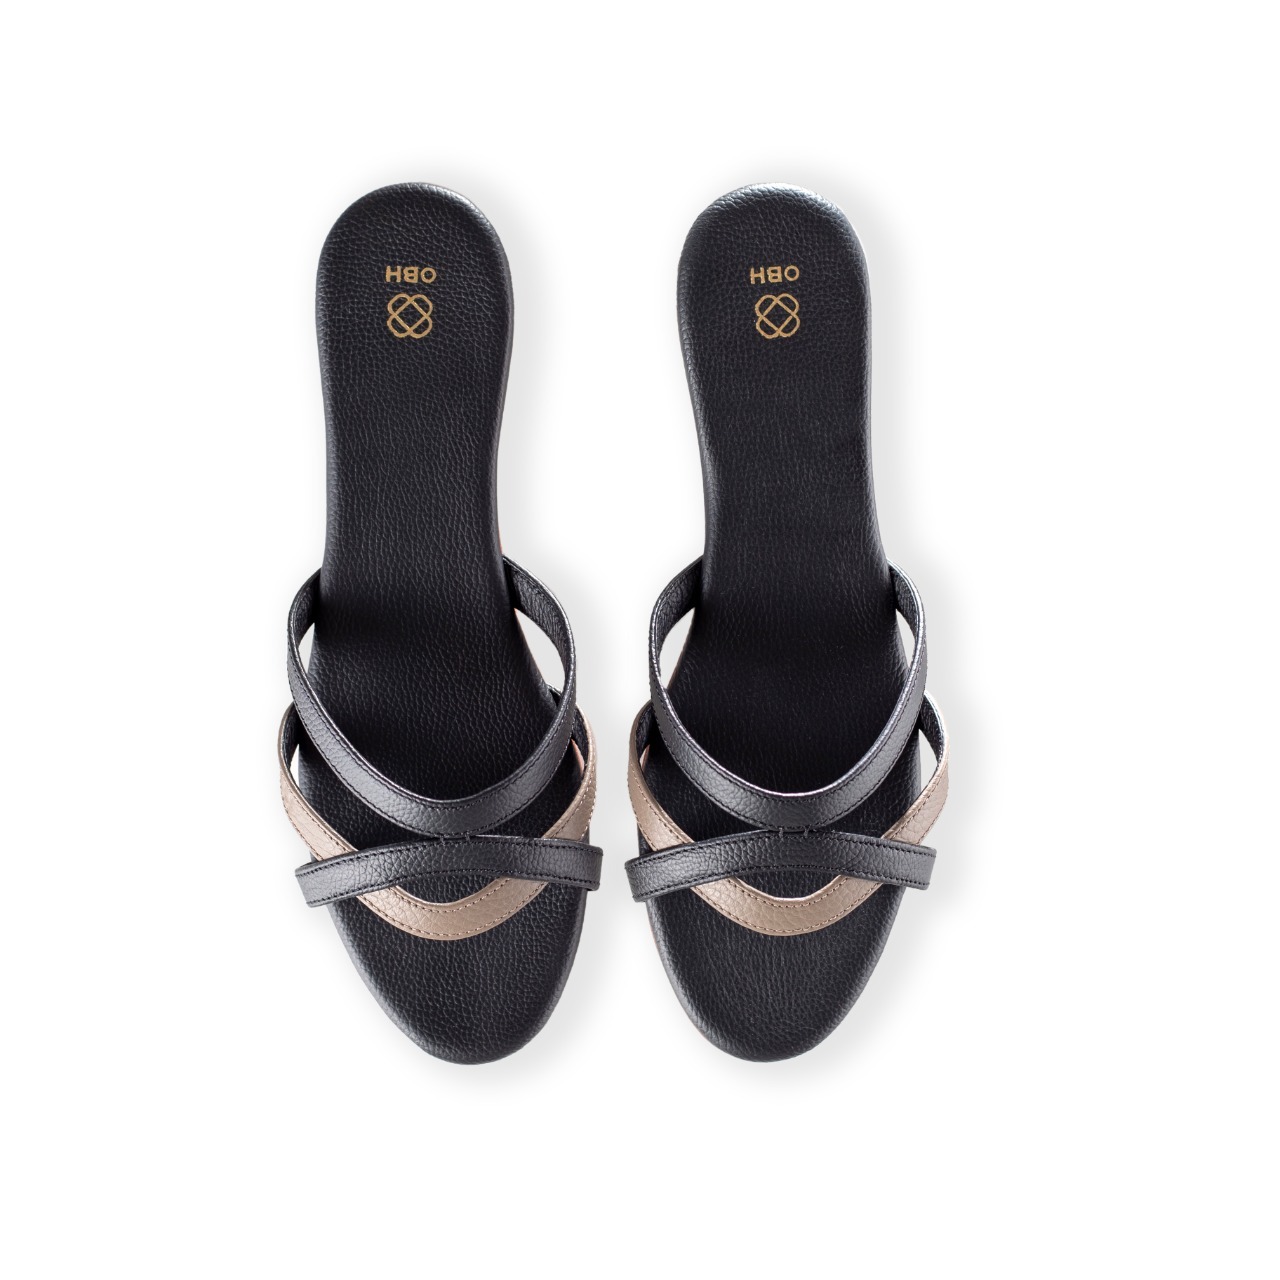 Buy OBH Ladies Sandal 2 Model Taupe/Black Color Online in UAE | OBH ...